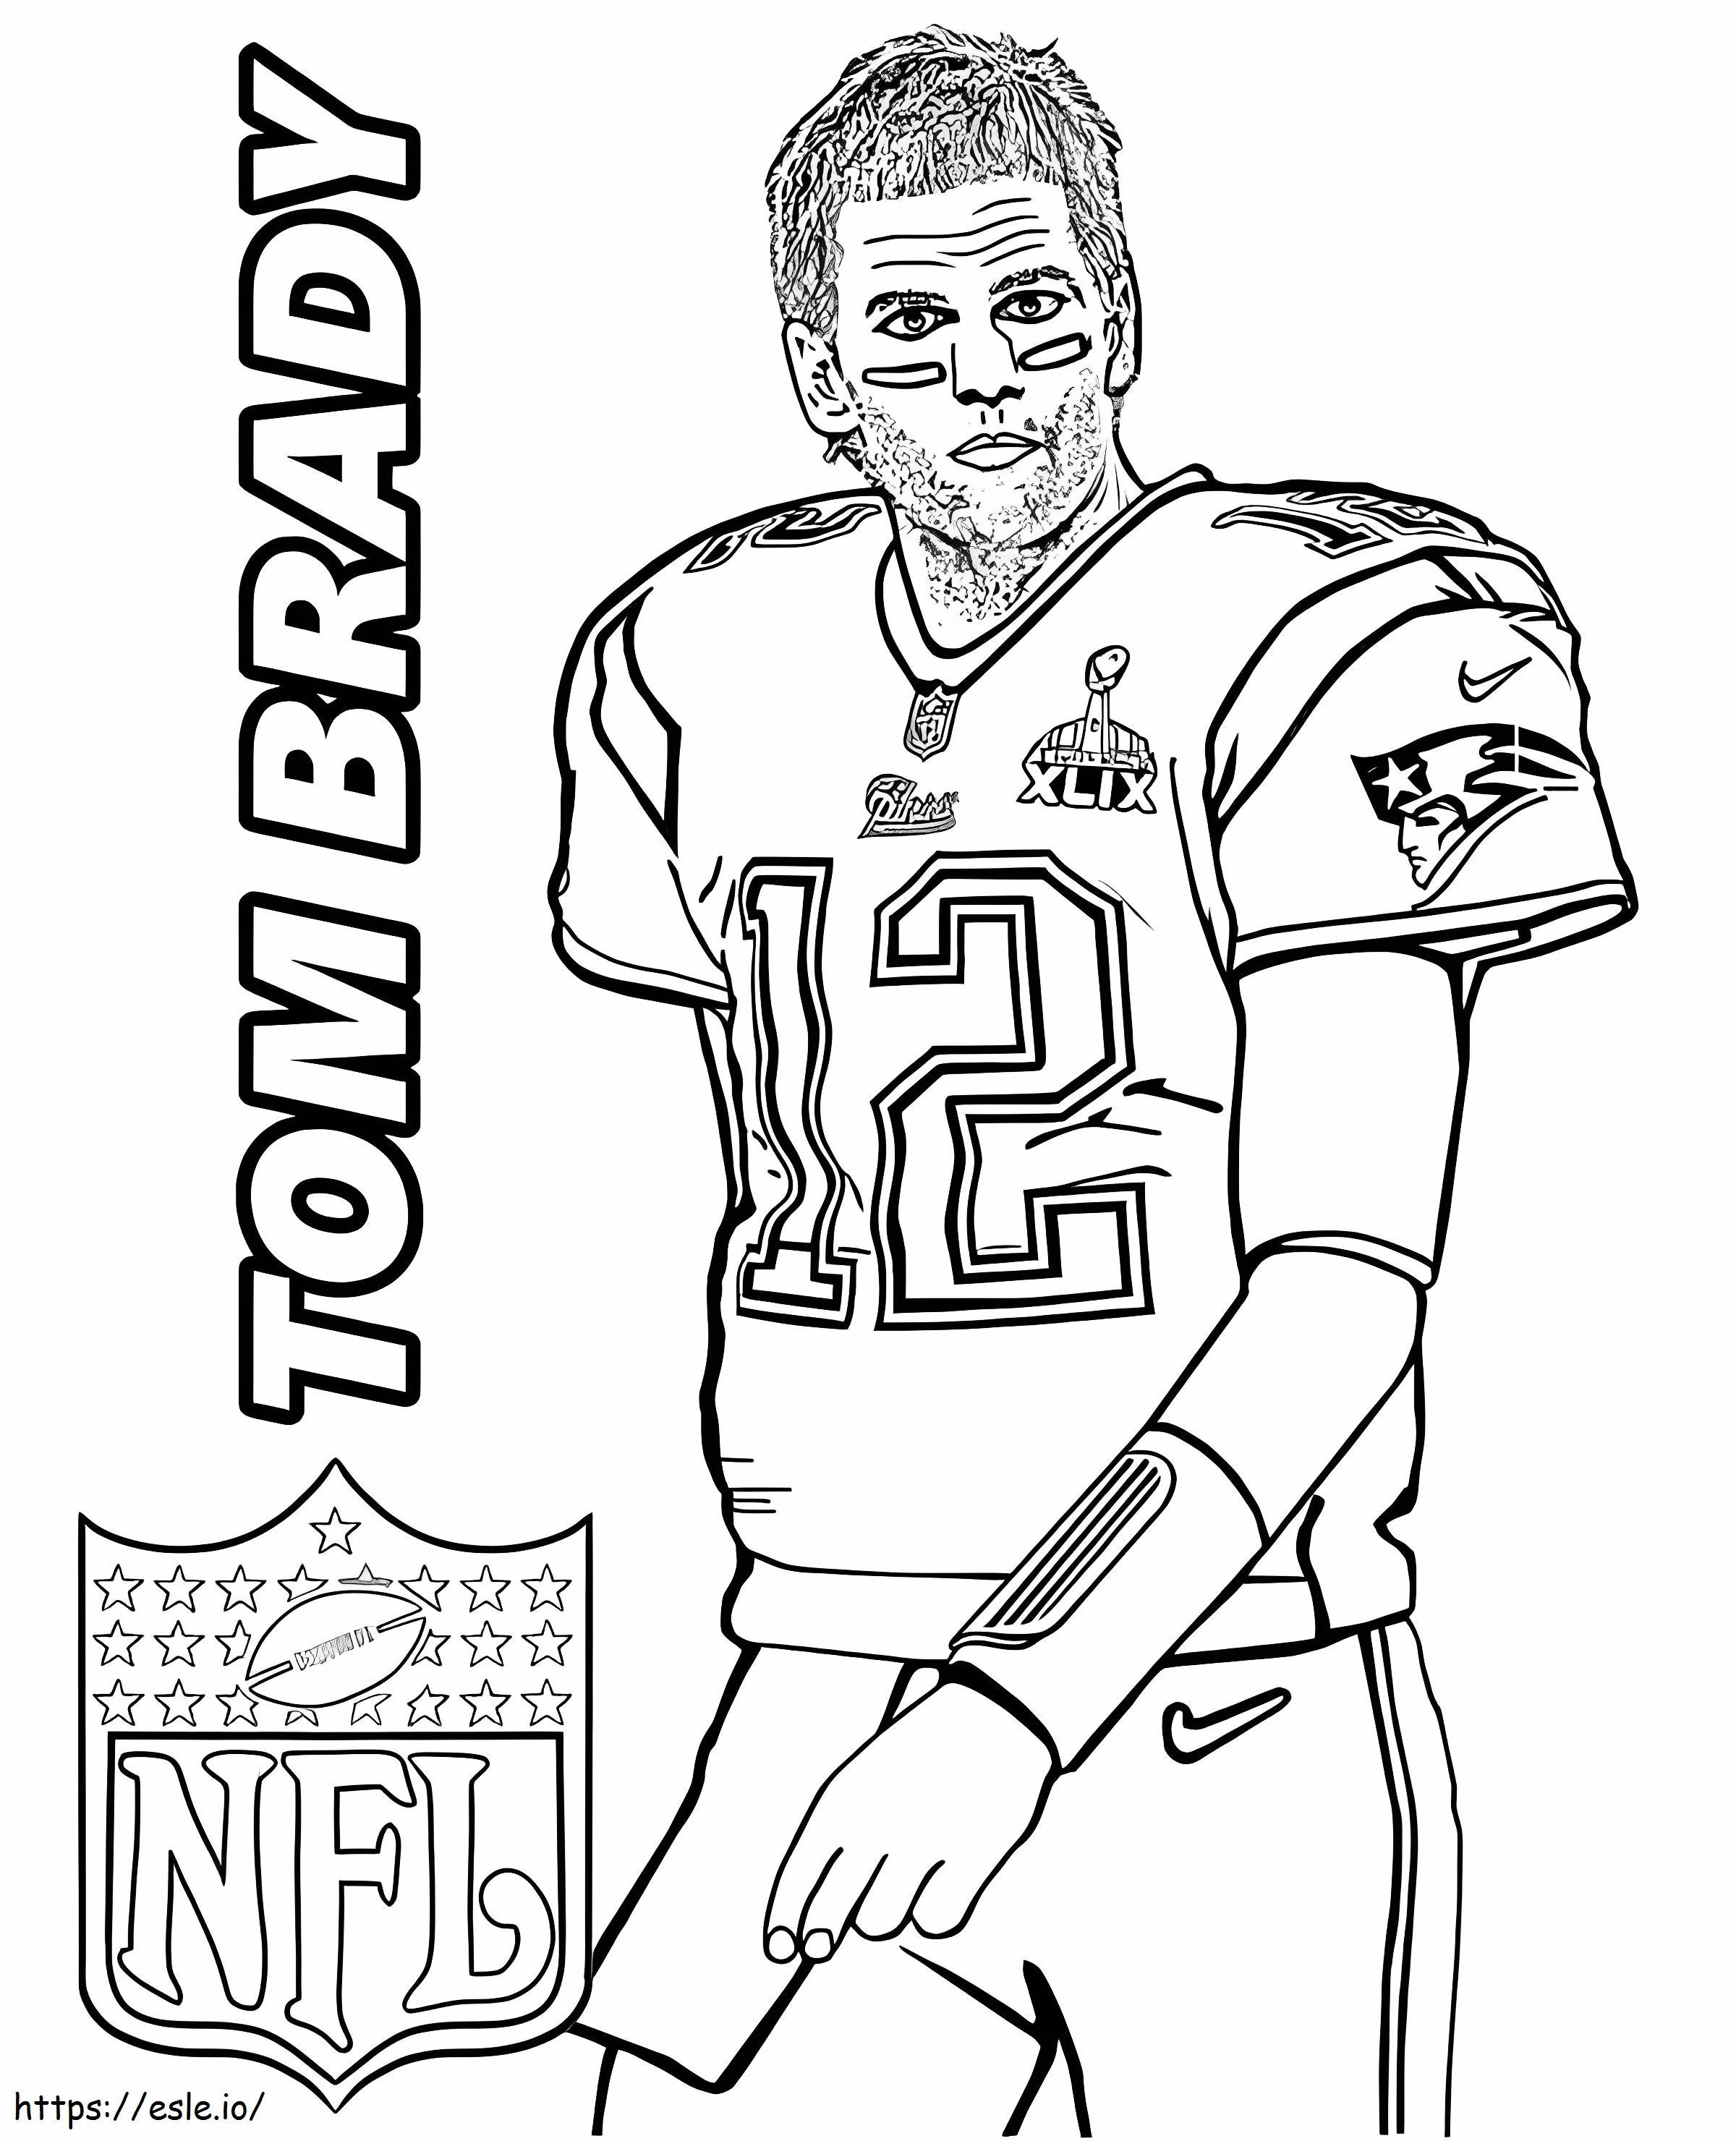 Drucken Sie Tom Brady ausmalbilder